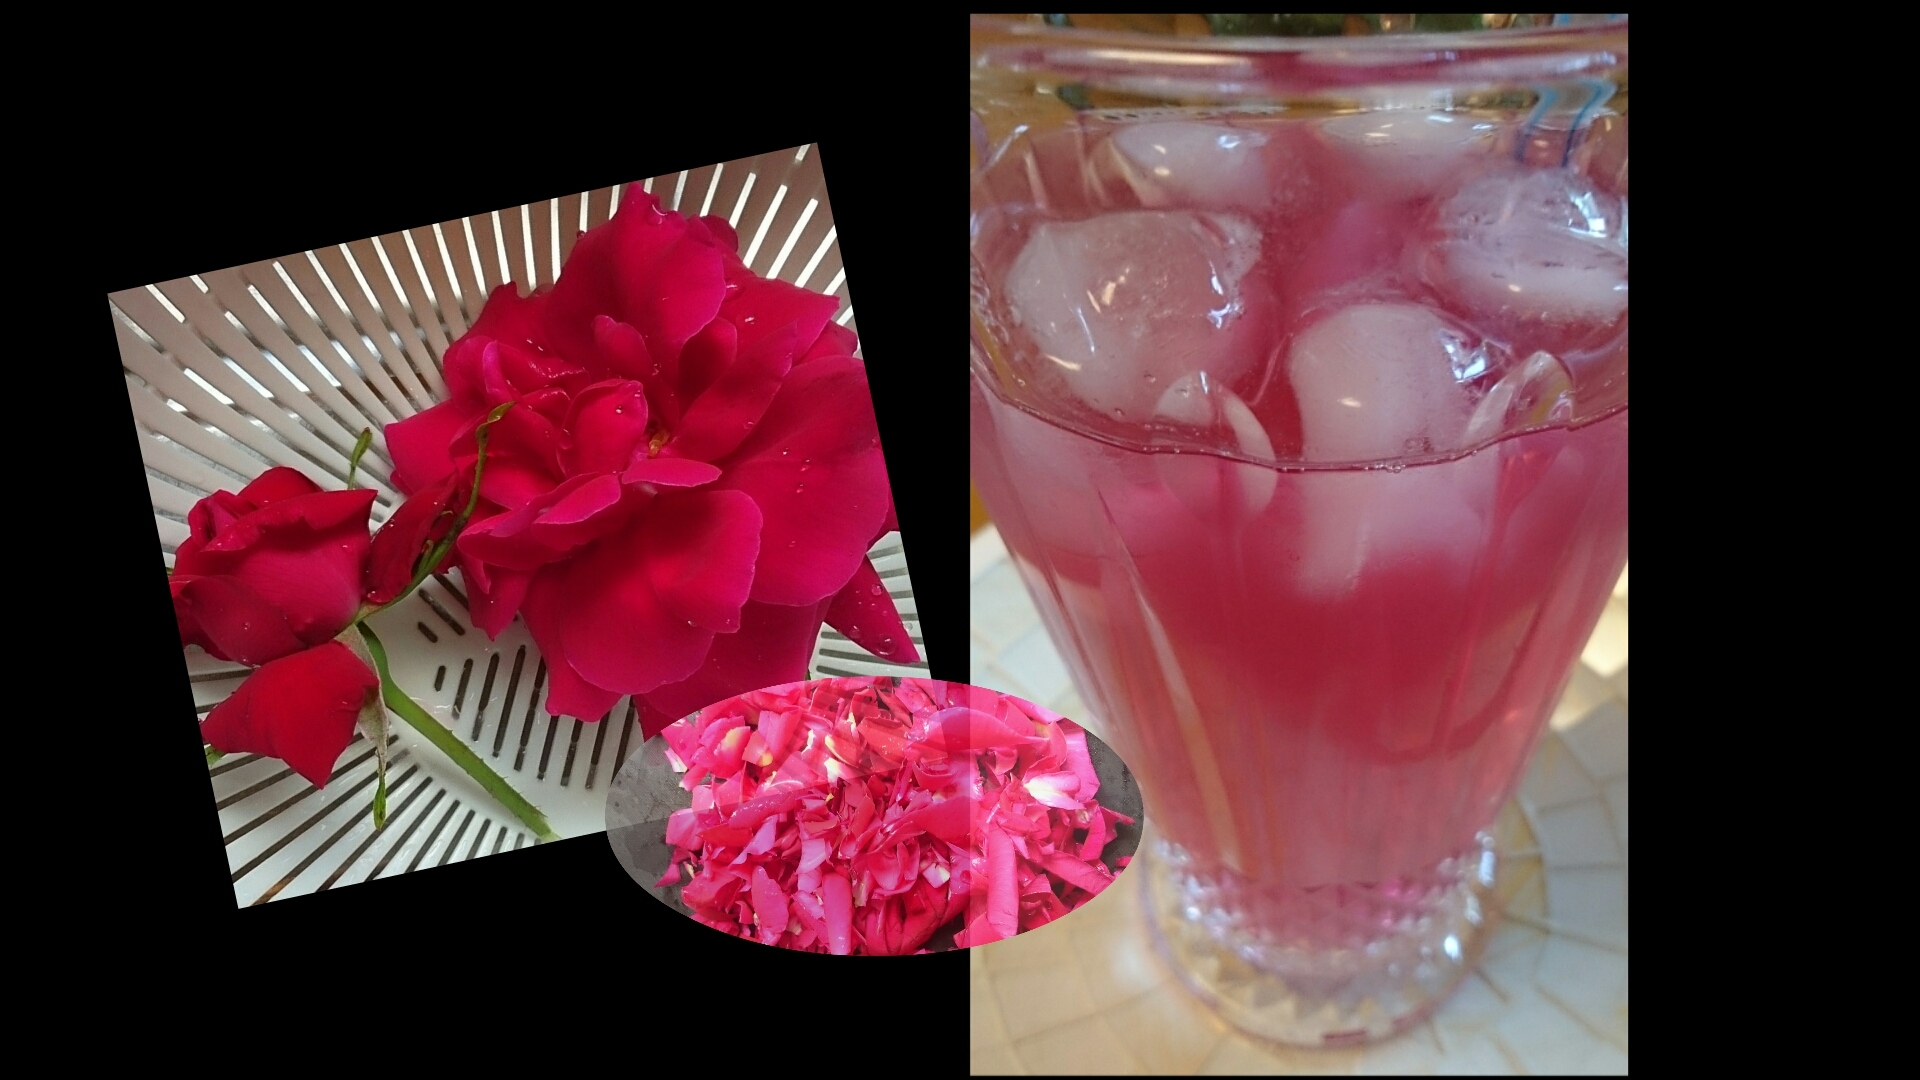 無農薬で育った食用薔薇 で作る薔薇の炭酸ジュース レシピ 作り方 By 所沢とっくん 楽天レシピ